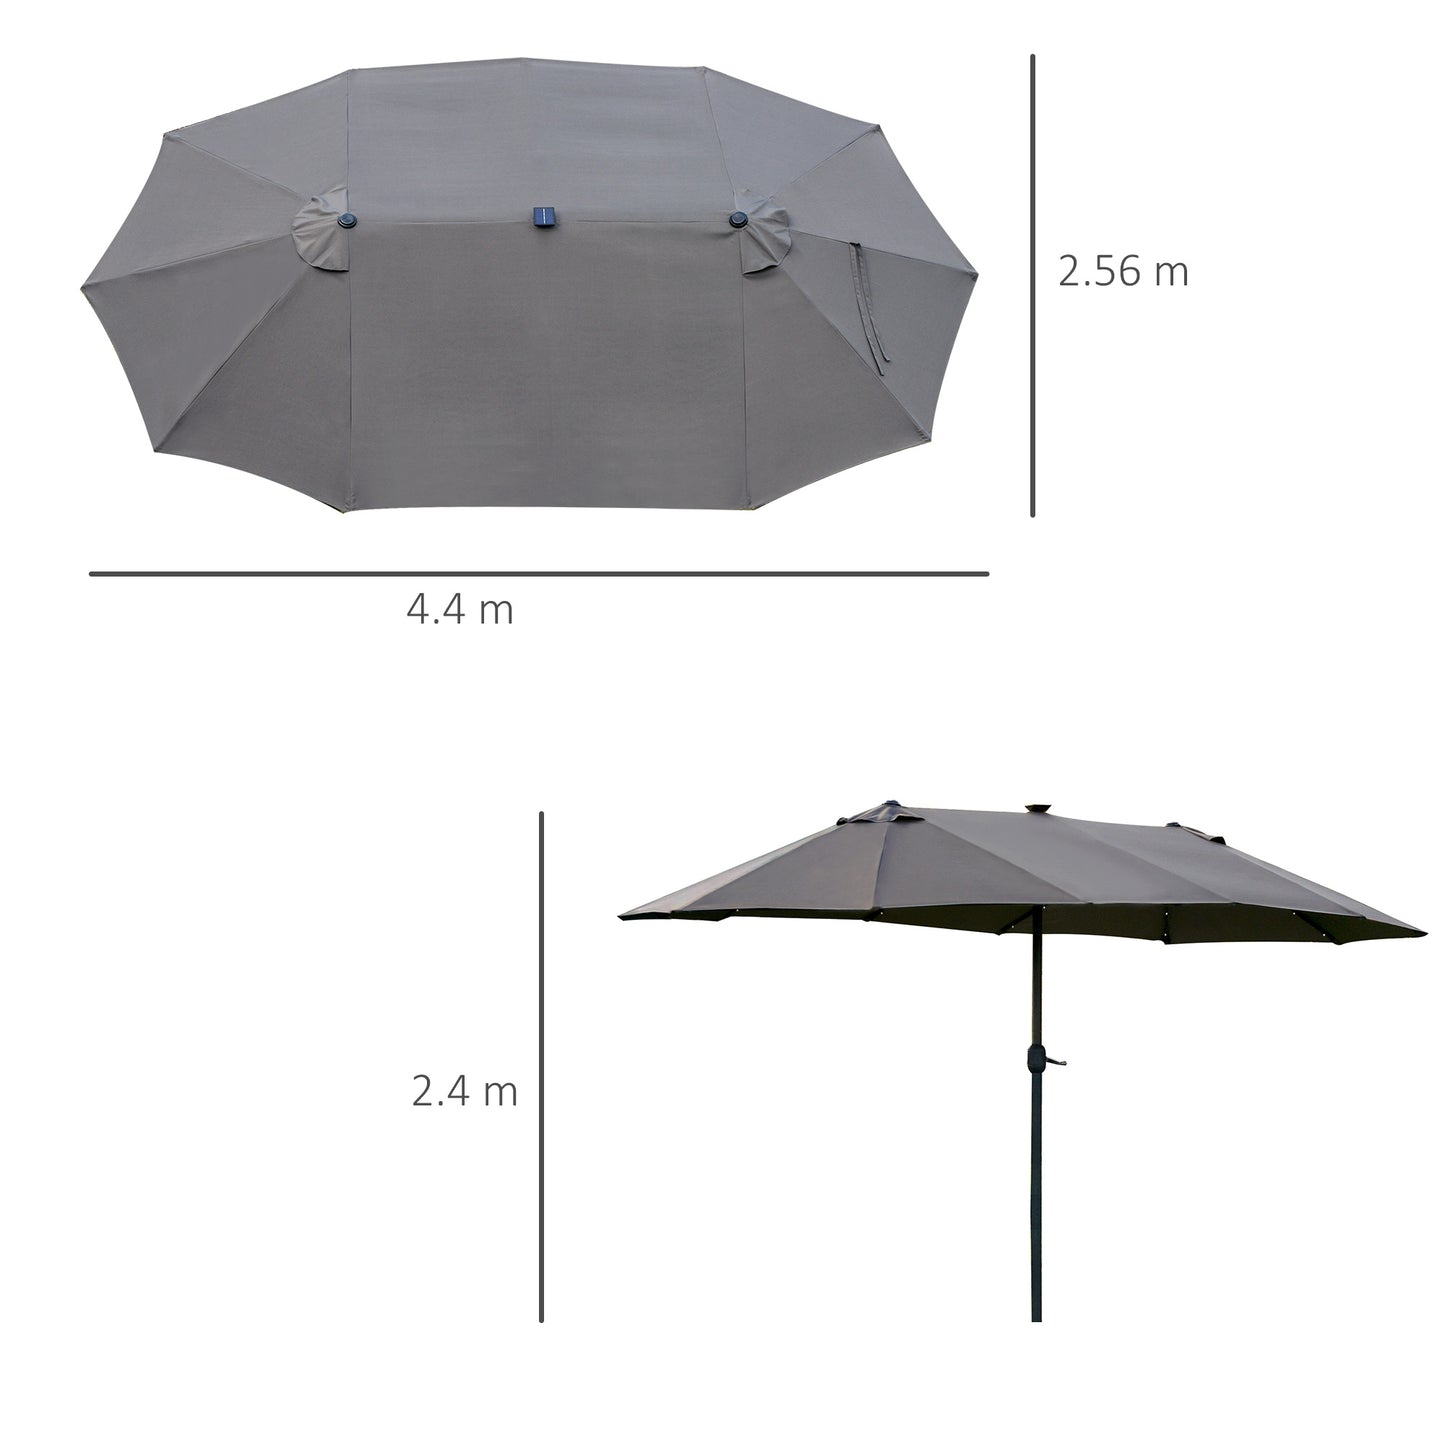 Outsunny 4.4m Double-Sided Sun Umbrella Garden Parasol Patio Sun Shade Outdoor with LED Solar Light , Dark Grey